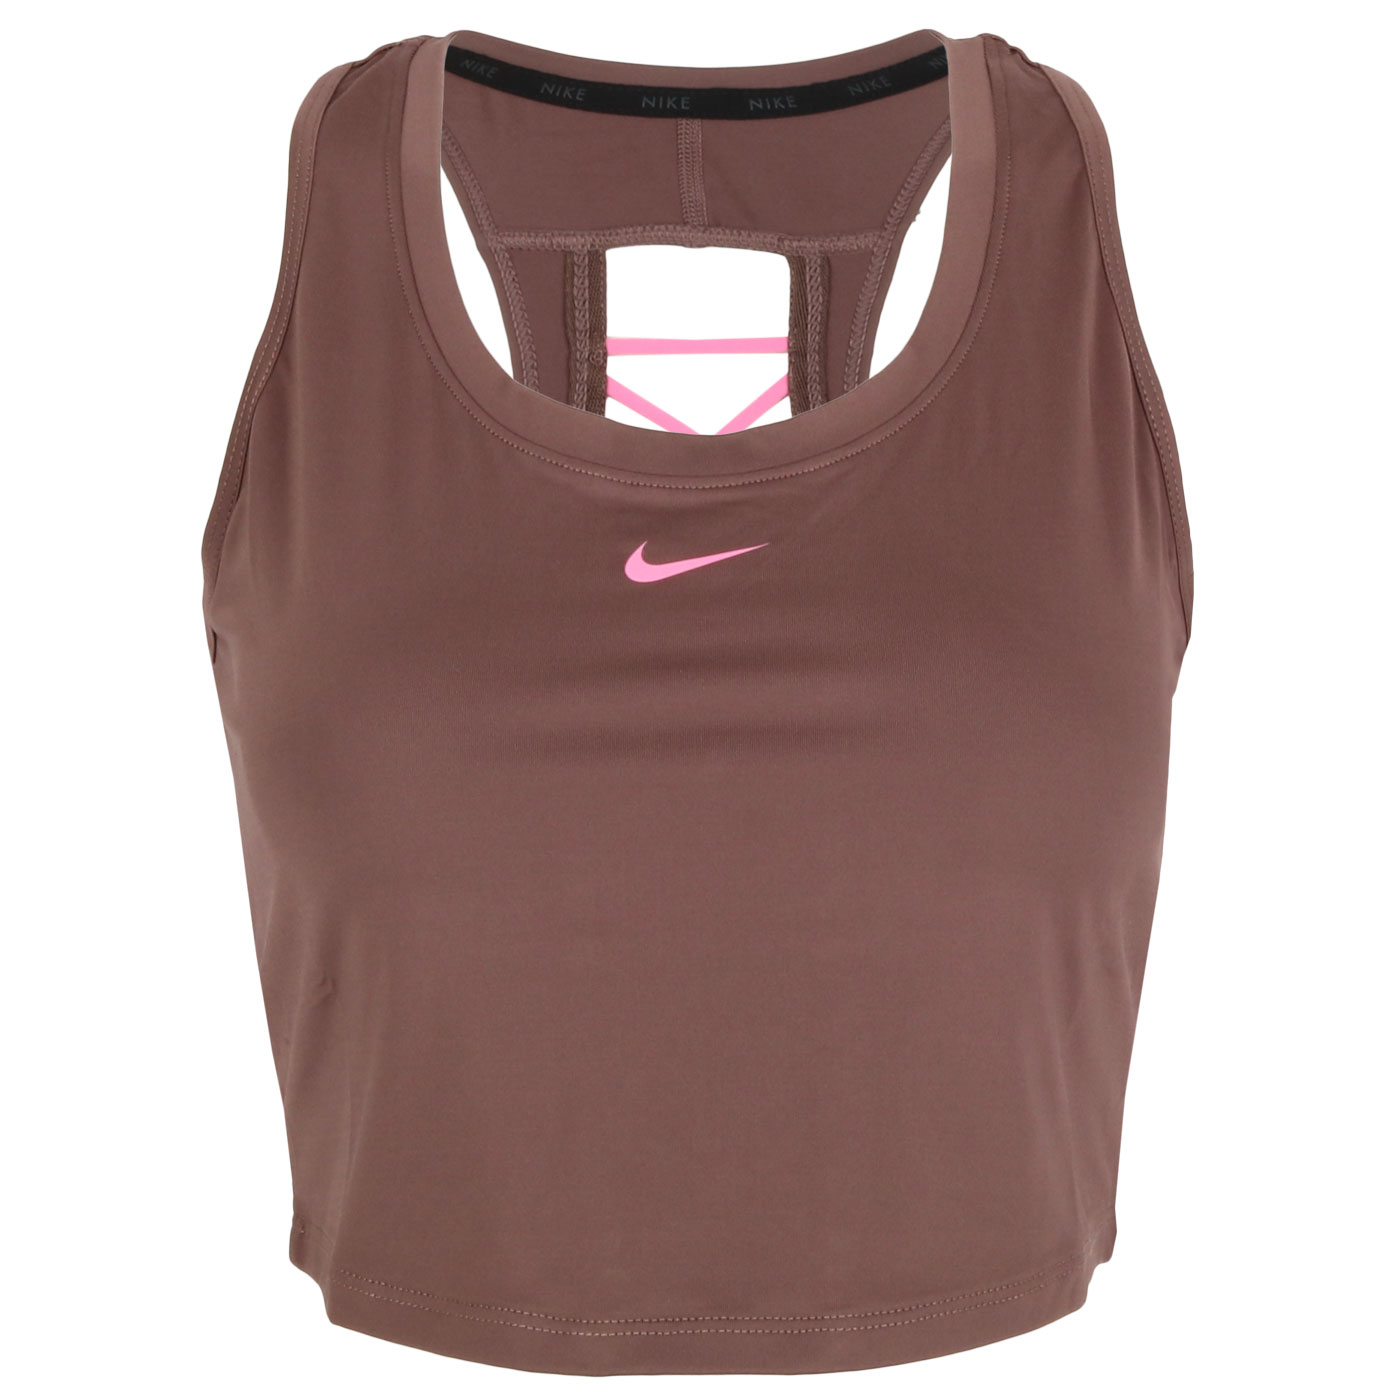 Produktbild von Nike One Dri-FIT Novelty Cropped Tanktop Damen - plum eclipse/pink glow/pink glow DX0004-291